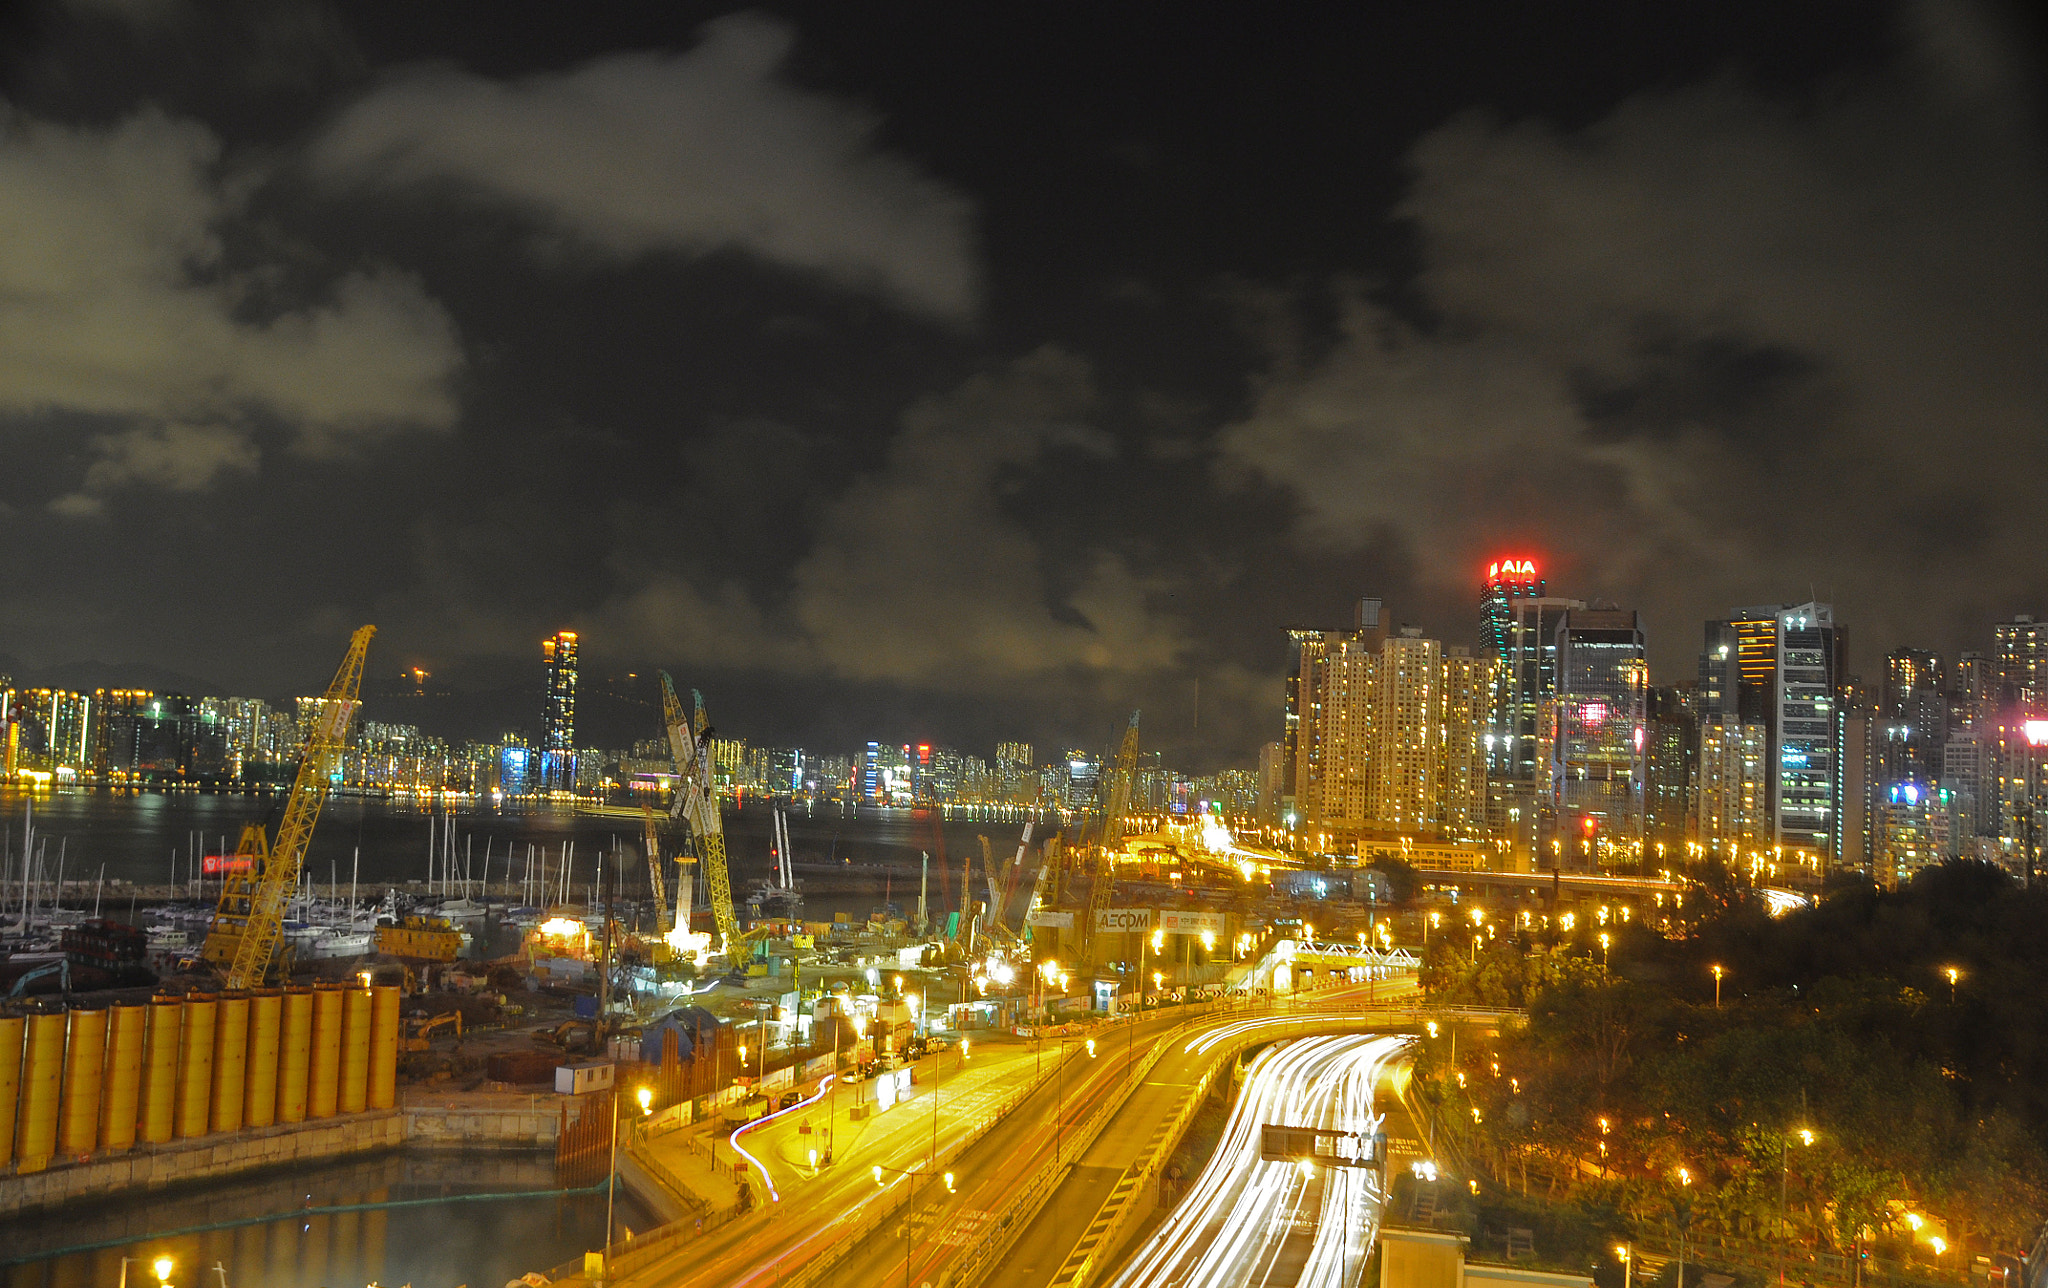 Nikon D90 + Sigma 18-200mm F3.5-6.3 DC OS HSM sample photo. Hong kong harbor at night photography